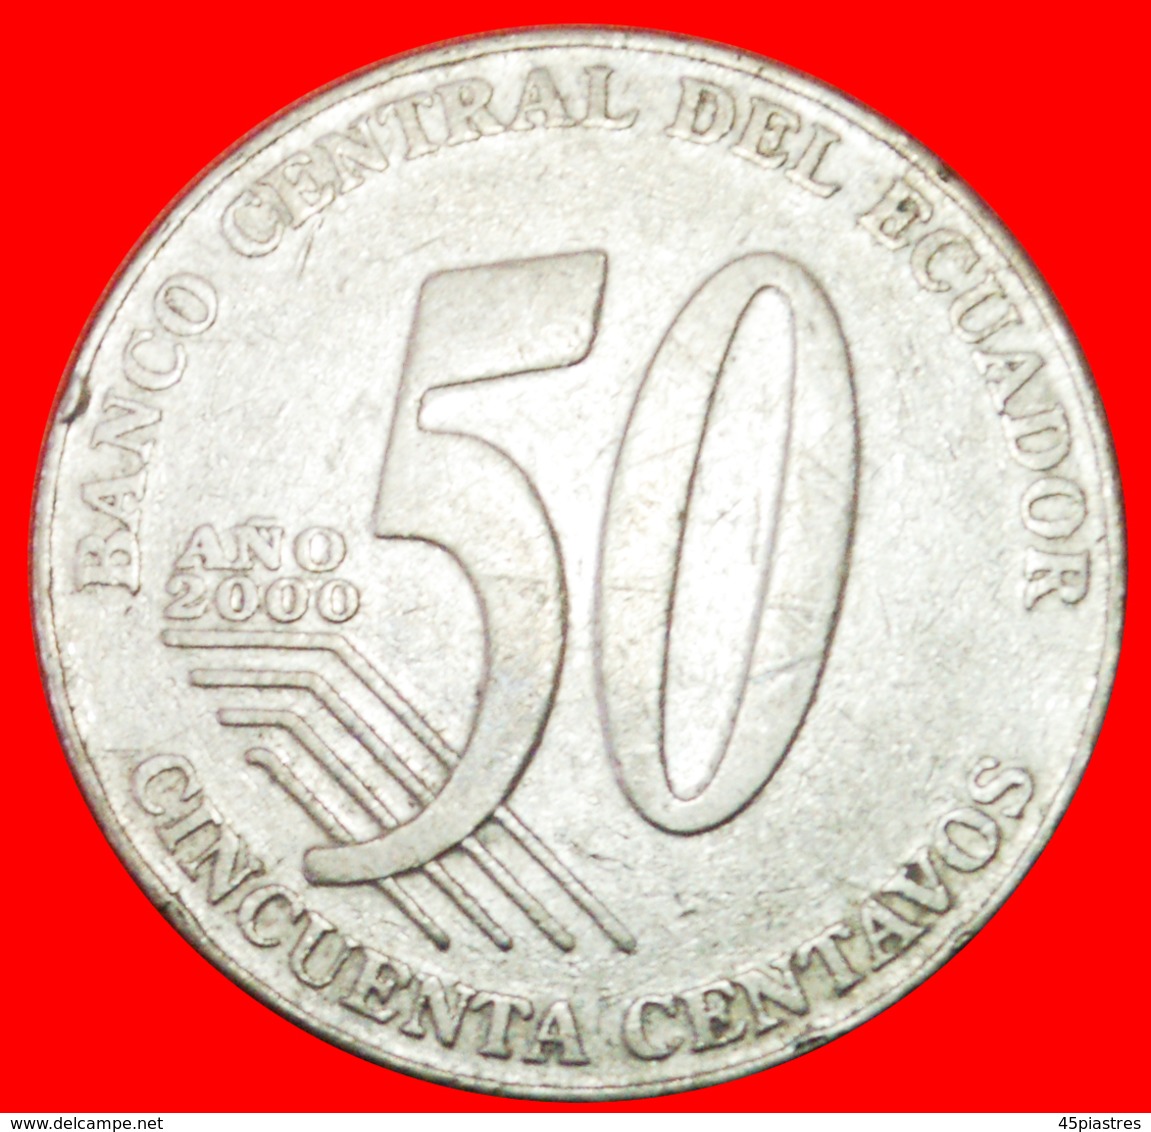 # MEXICO: ECUADOR ★ 50 CENTAVOS 2000! LOW START ★ NO RESERVE! - Ecuador